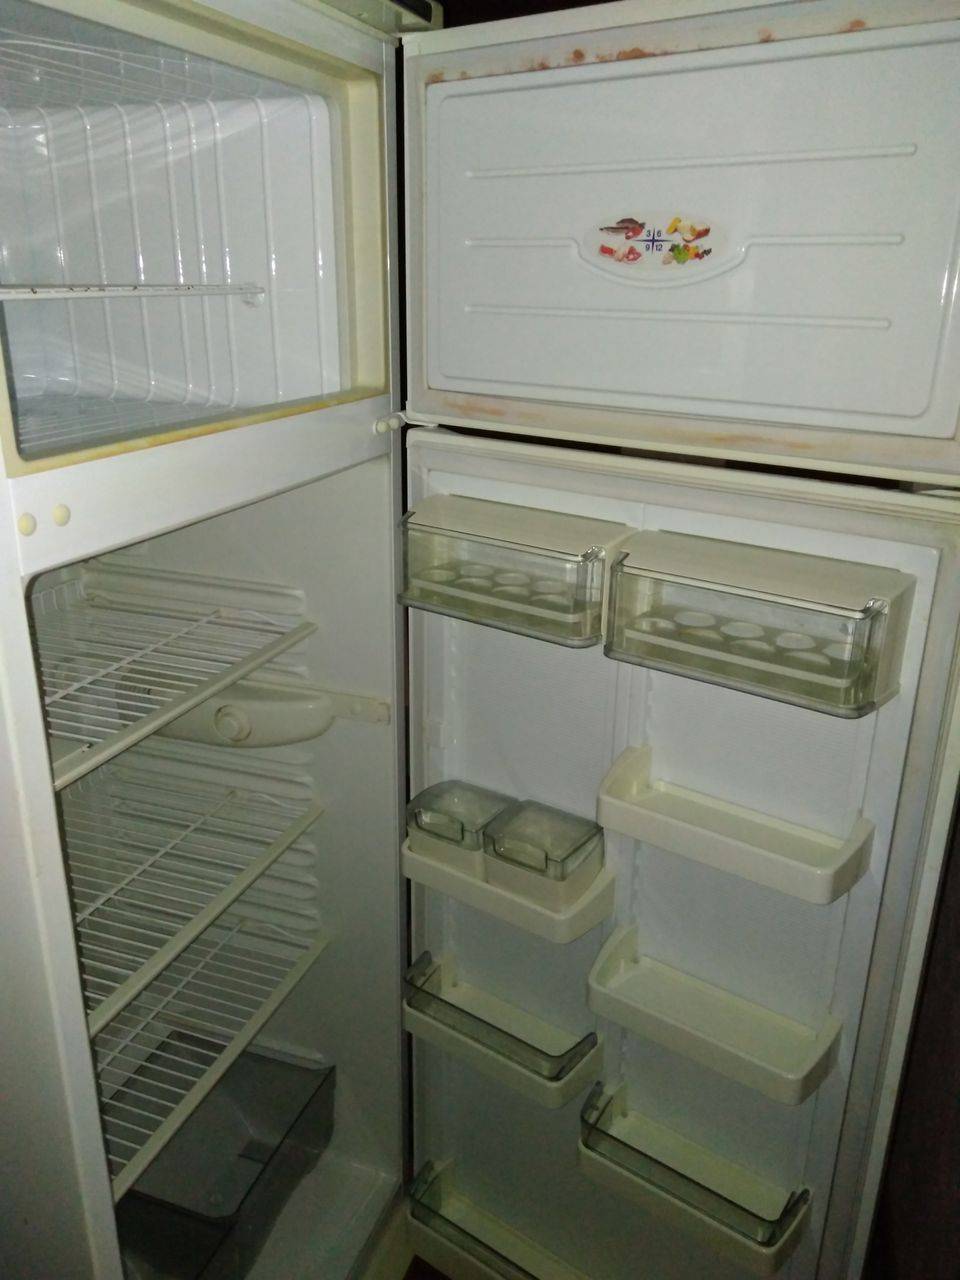 Ремонт холодильников «минск»